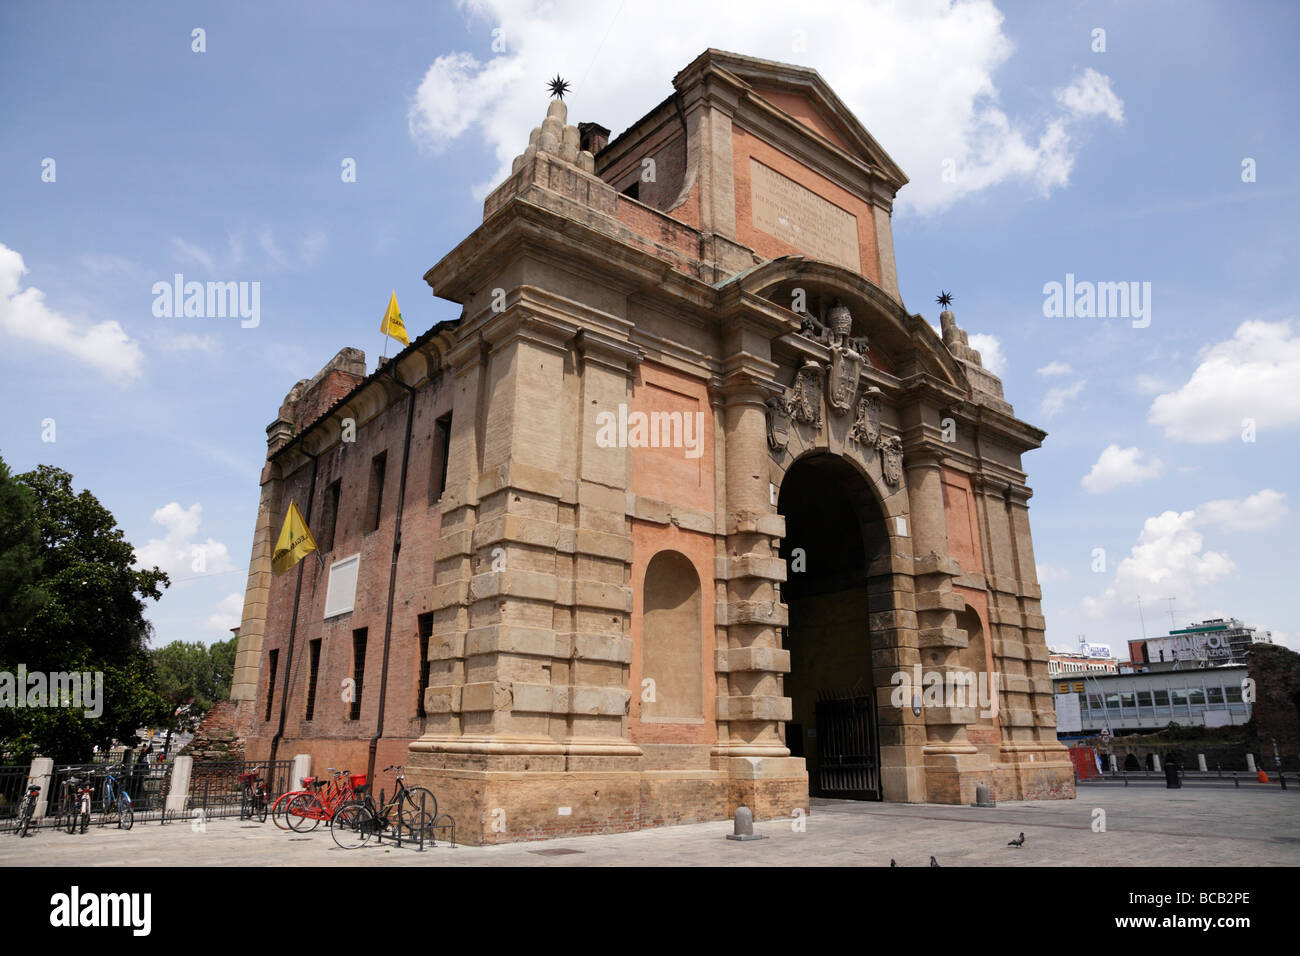 porta galliera designed by bartolomeo provaglia in 1661 within piazza xx settembre bologna italy Stock Photo